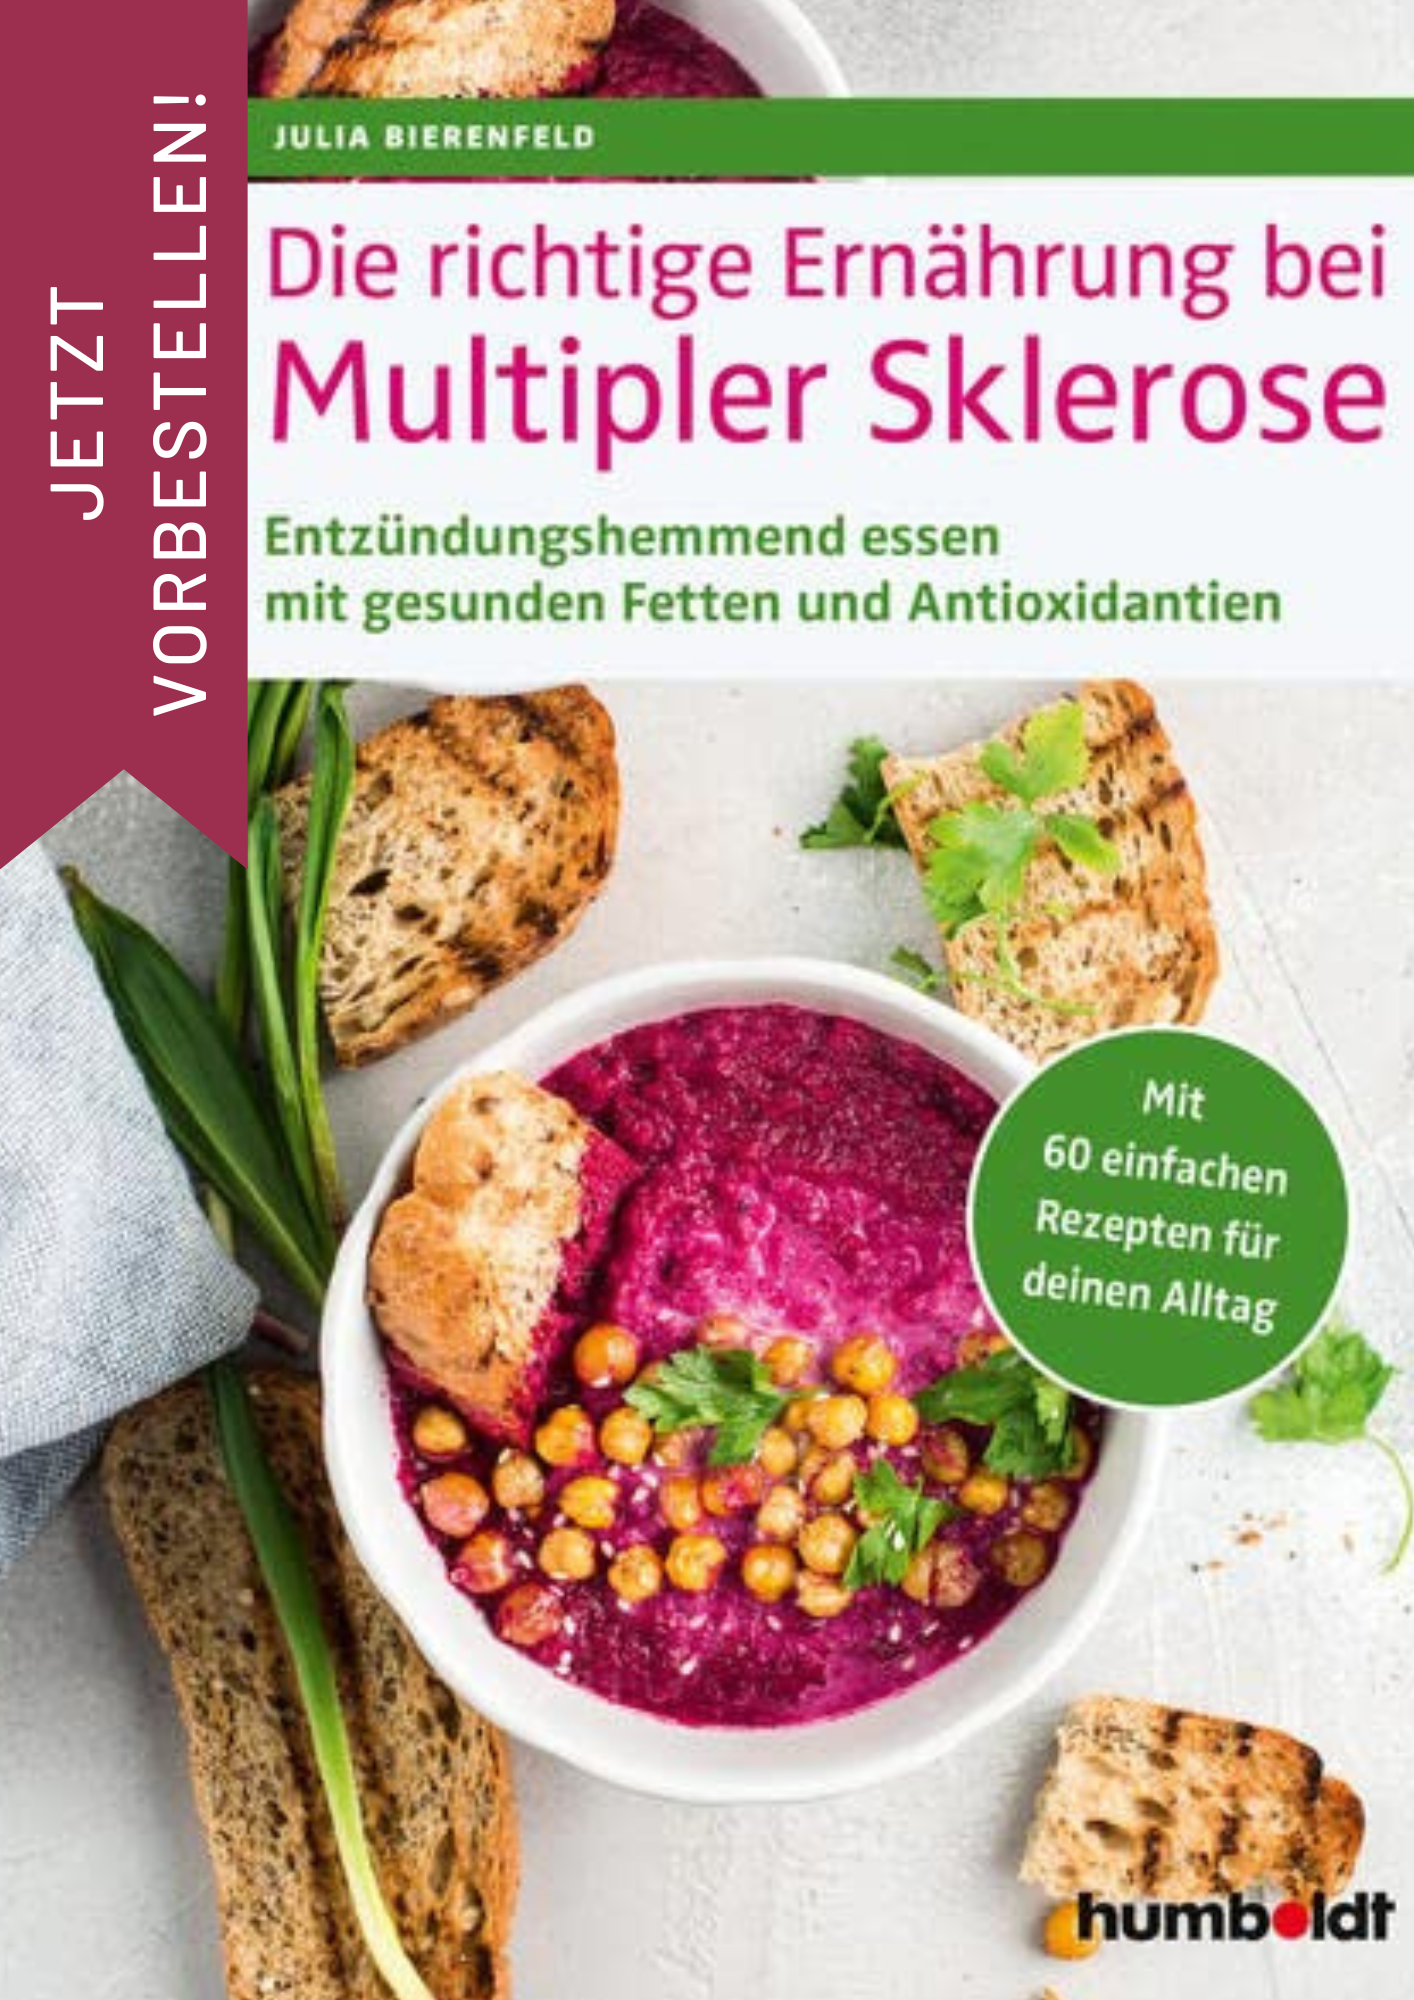 JETZT VORBESTELLEN, Die richtige Ernährung bei Multipler Sklerose, Julia Bierenfeld, 9783842631335